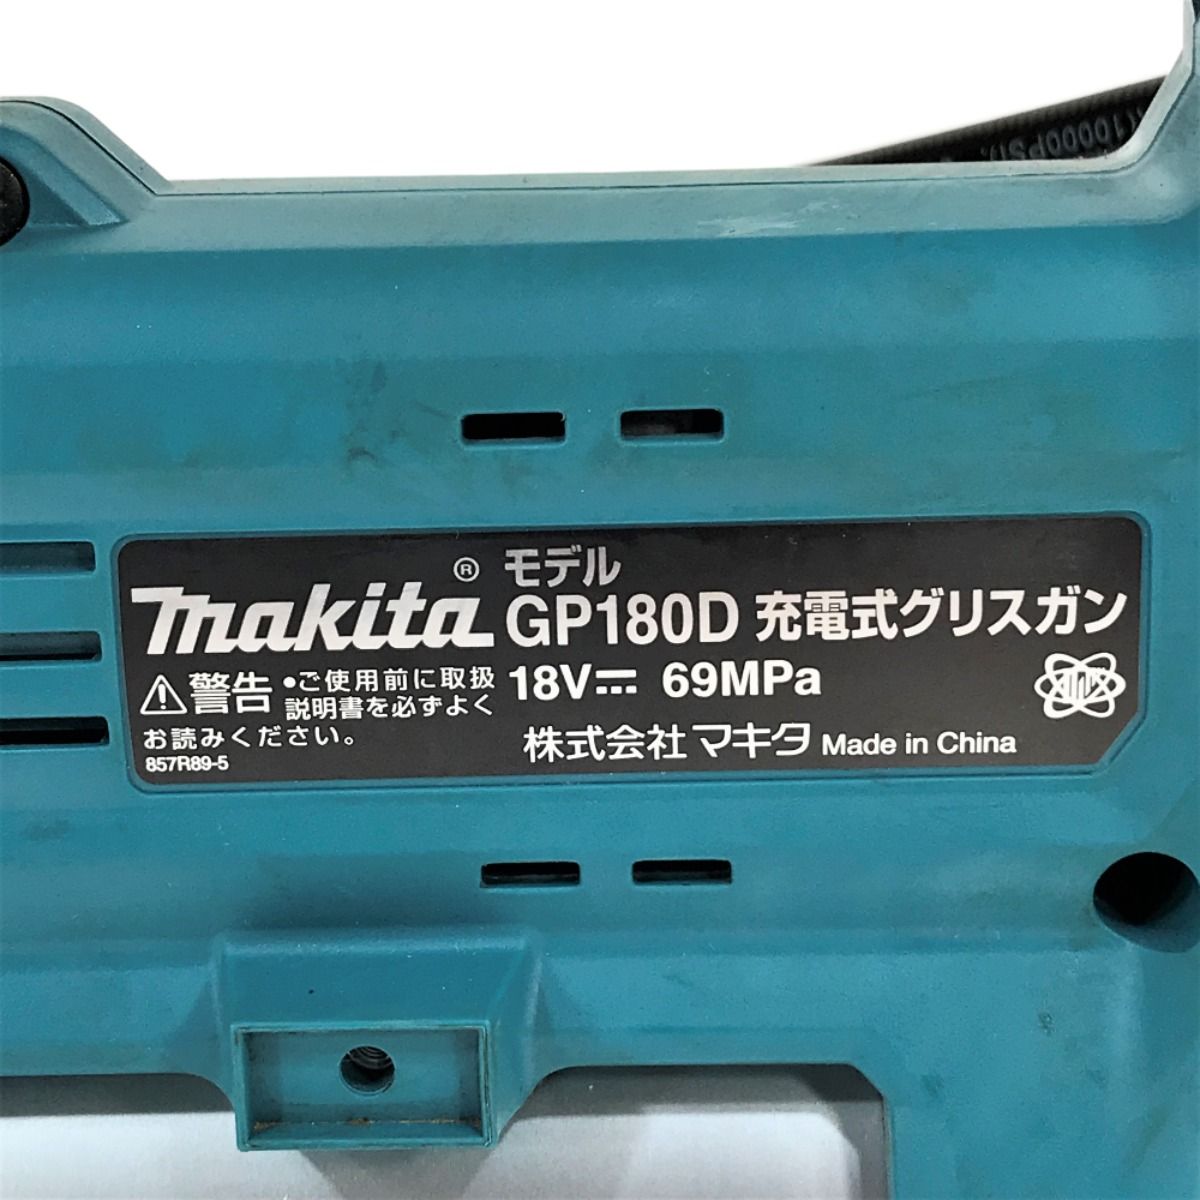 MAKITA マキタ 18V 充電式グリスガン GP180D 本体のみ - なんでも